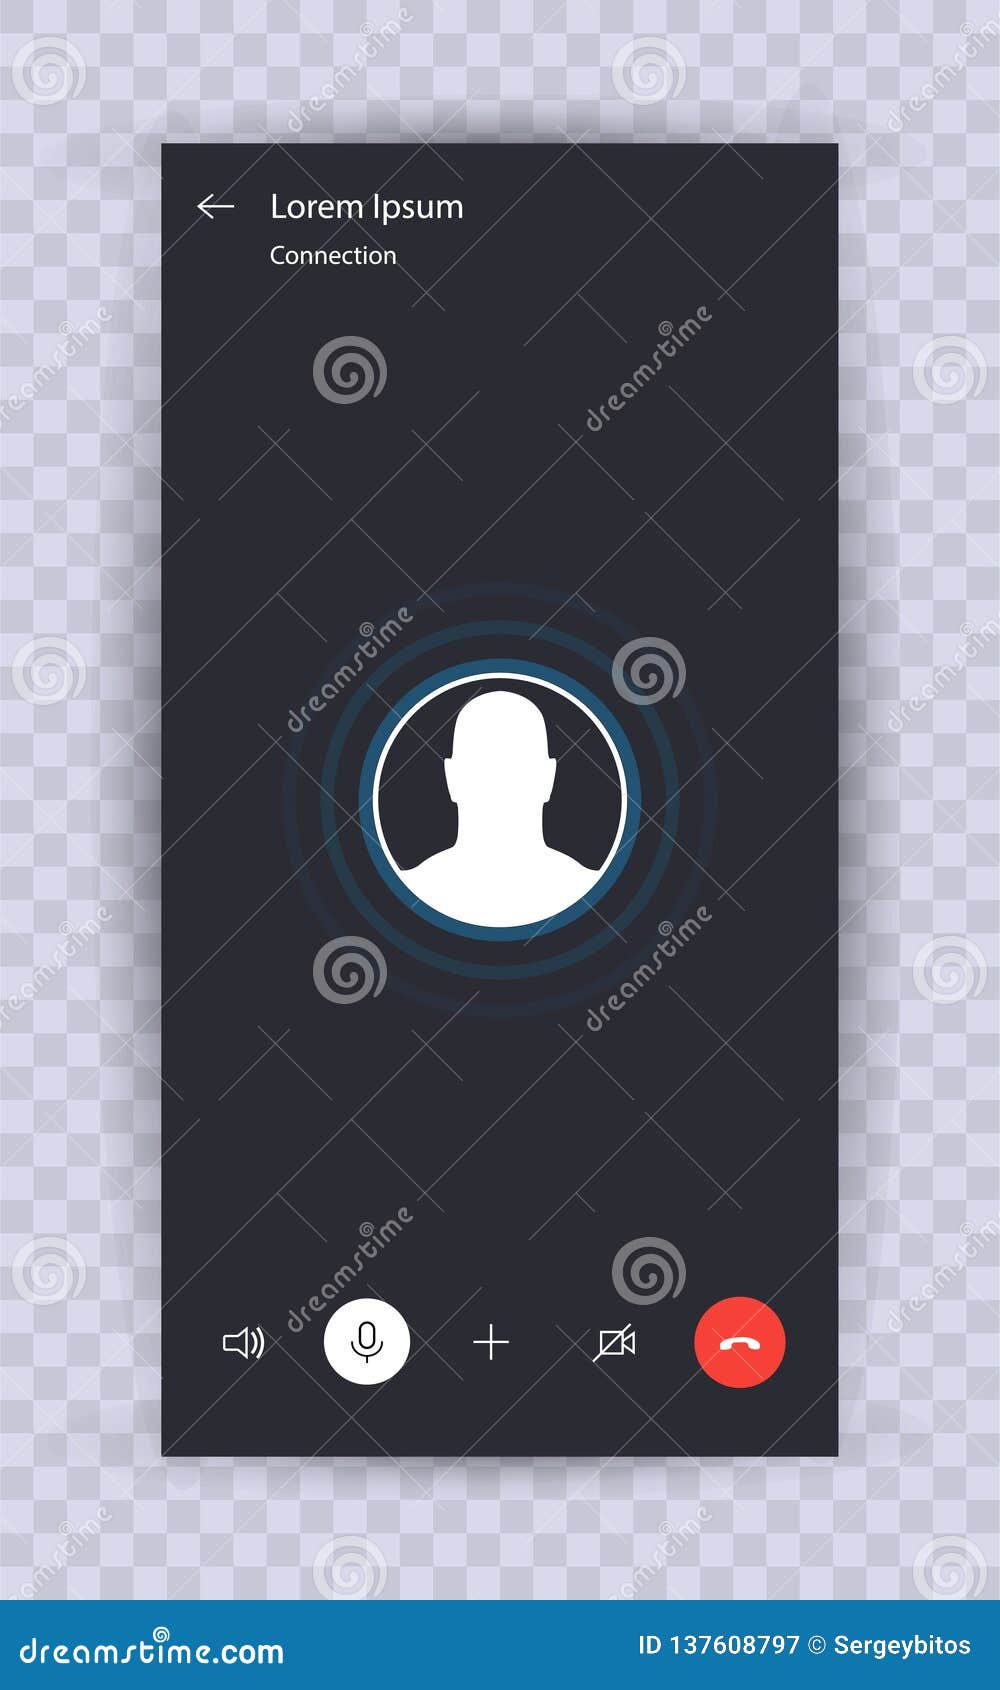 skype call screen template